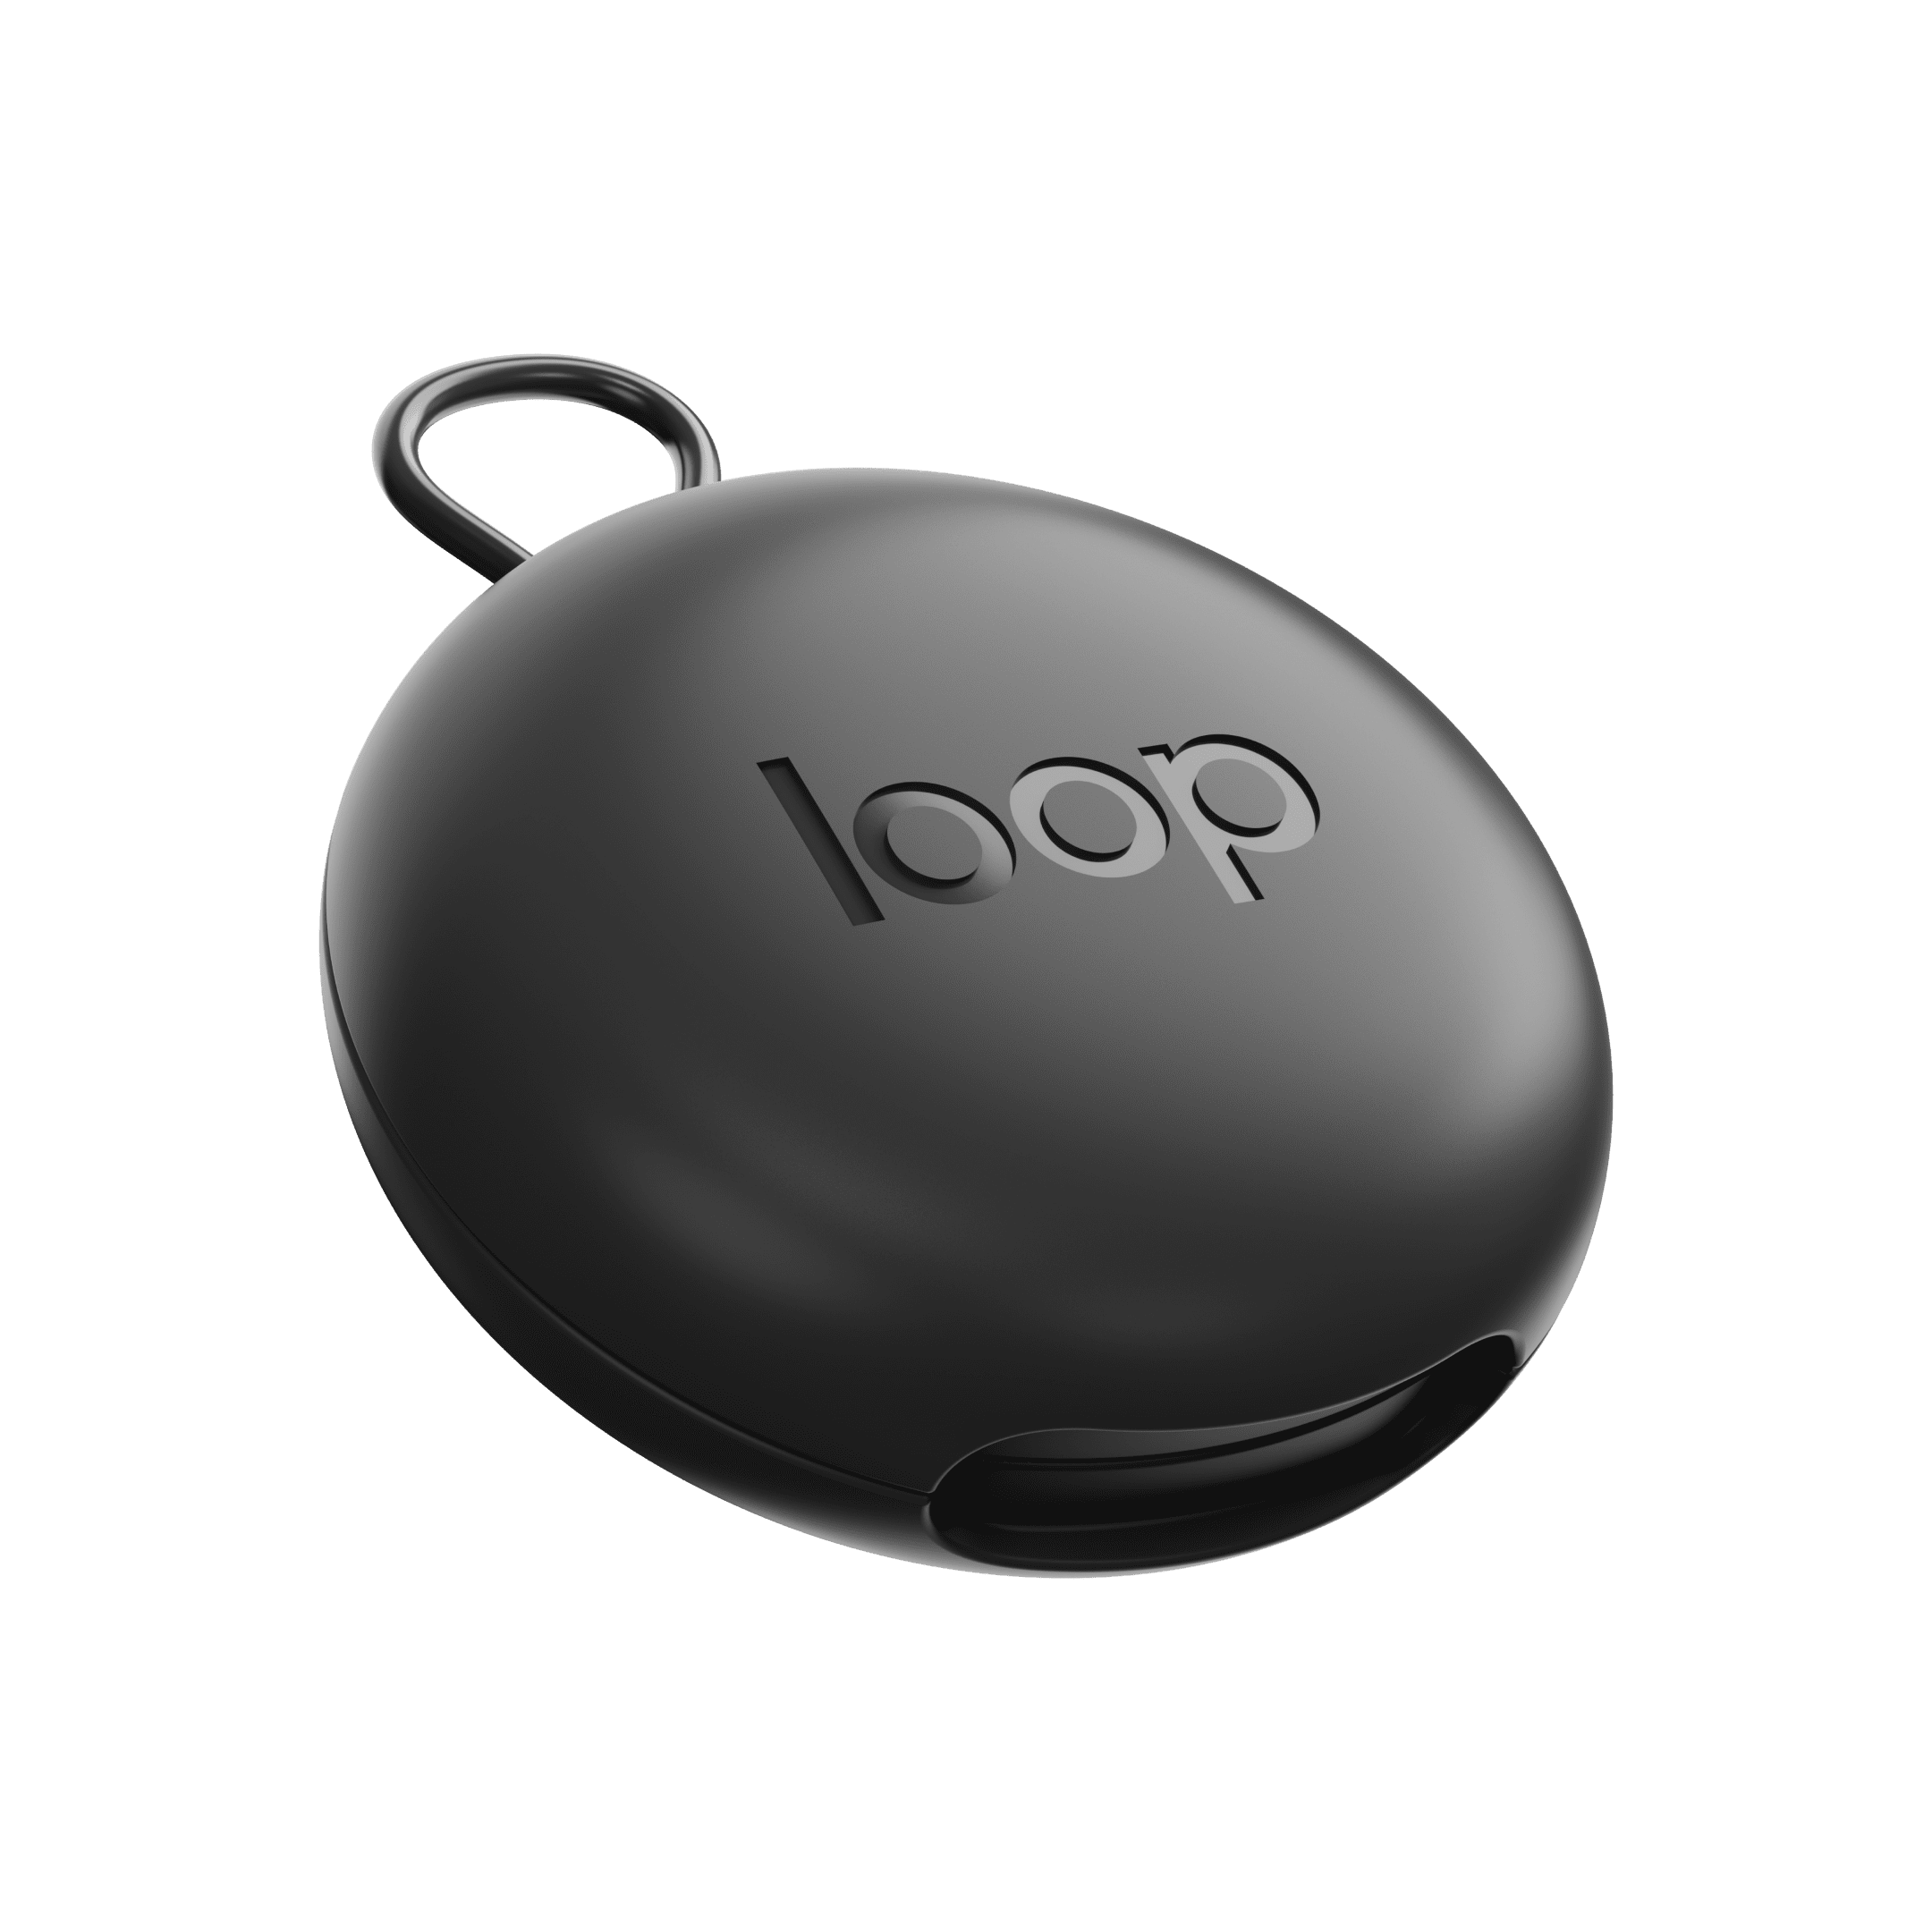 Loop Carry Case Black: Earplug Storage – Loop Earplugs